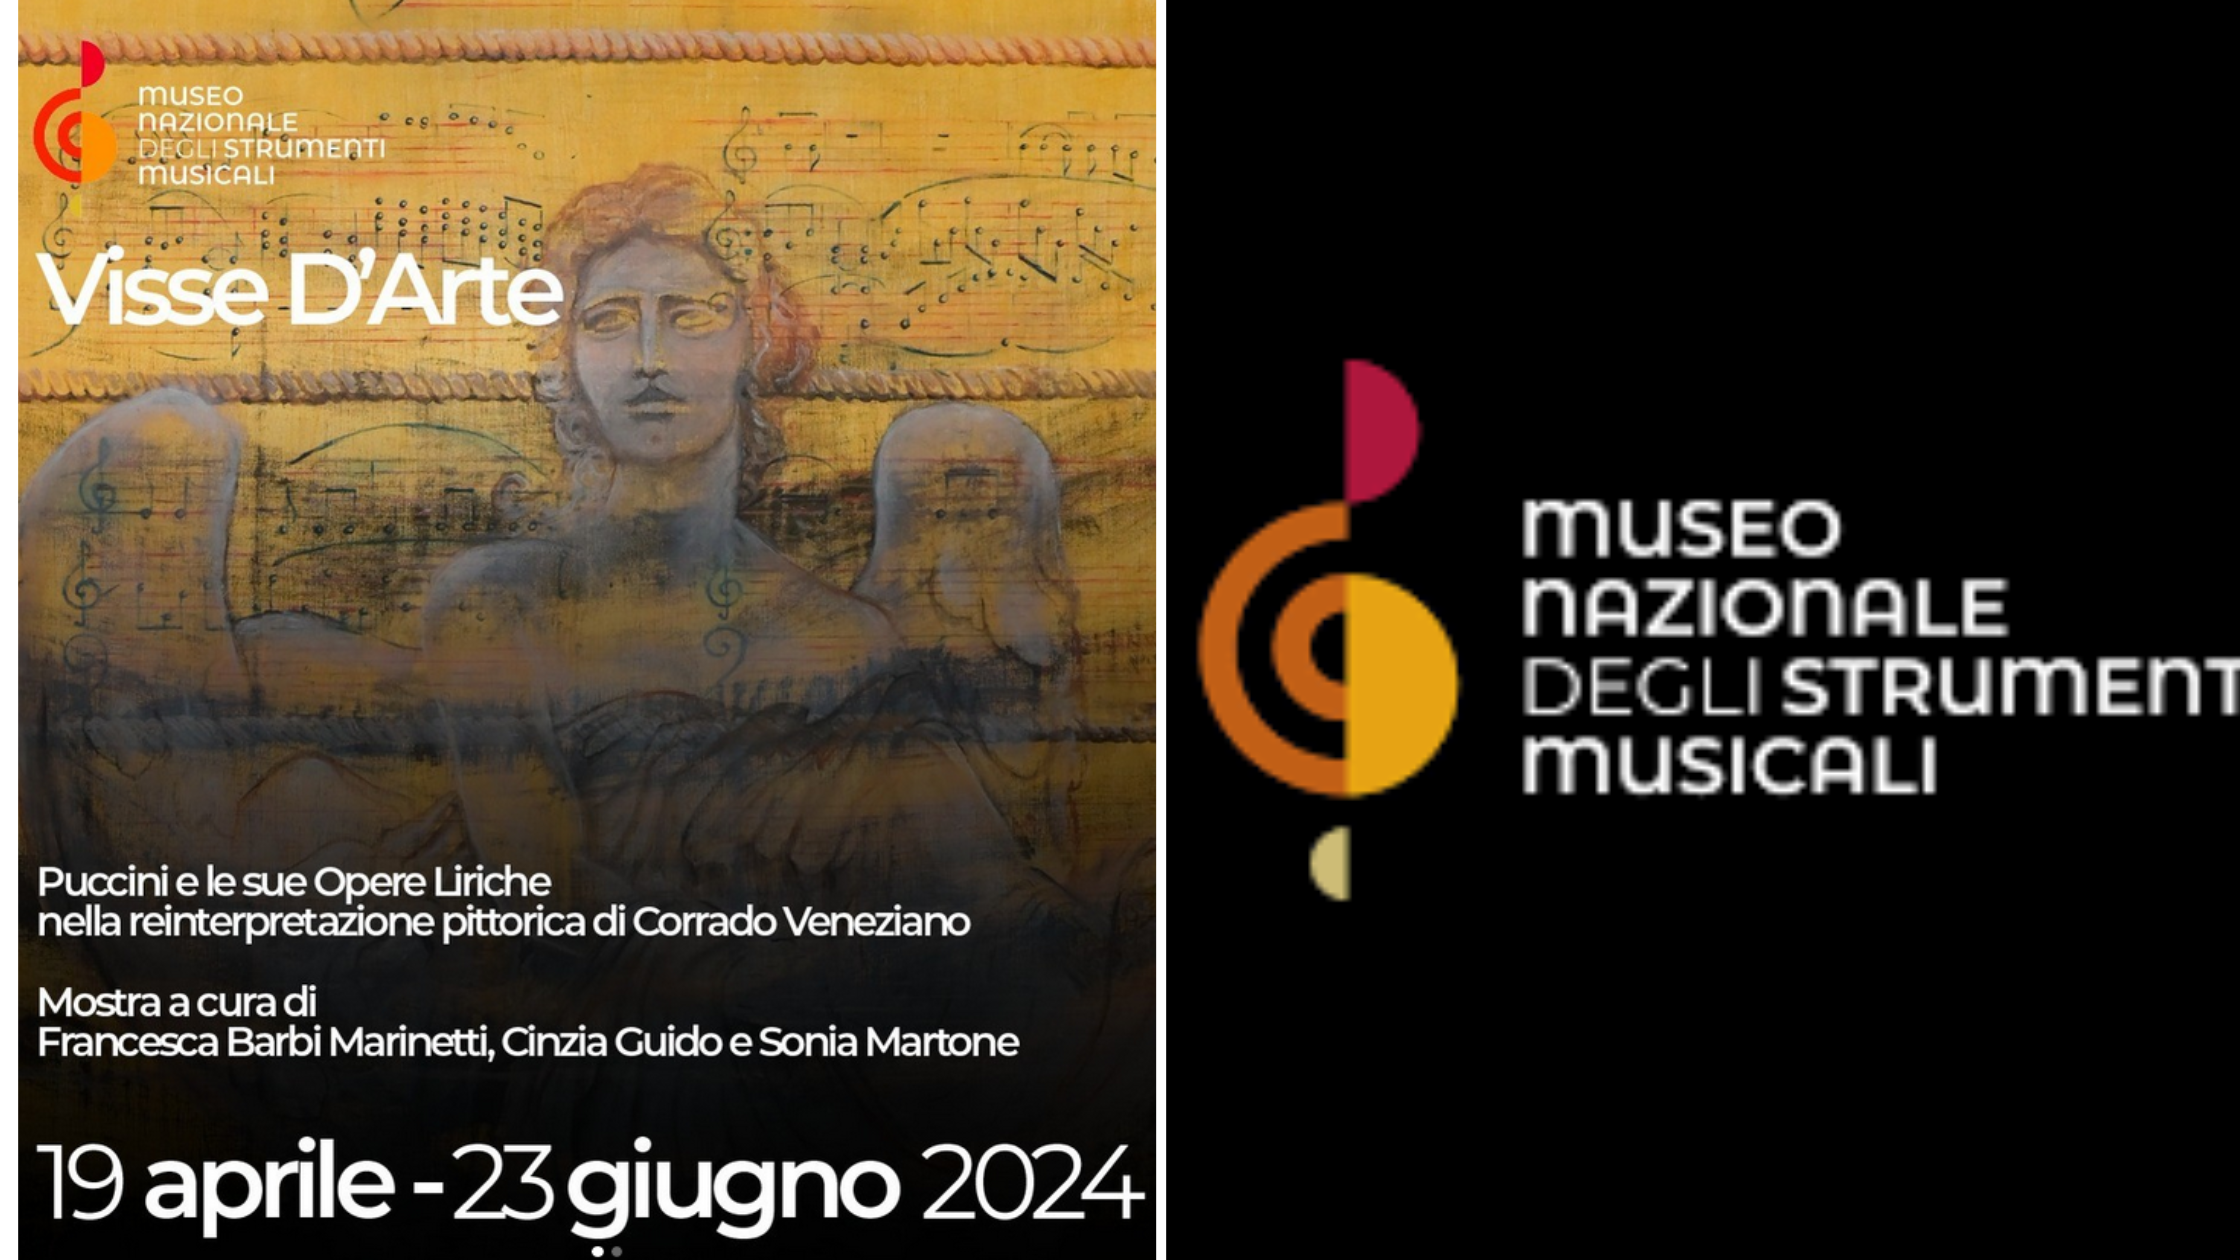 Dal 19/3 al 23/6/2024 “Visse d’arte” Mostra di Corrado Veneziano al Museo Nazionale degli Strumenti Musicali